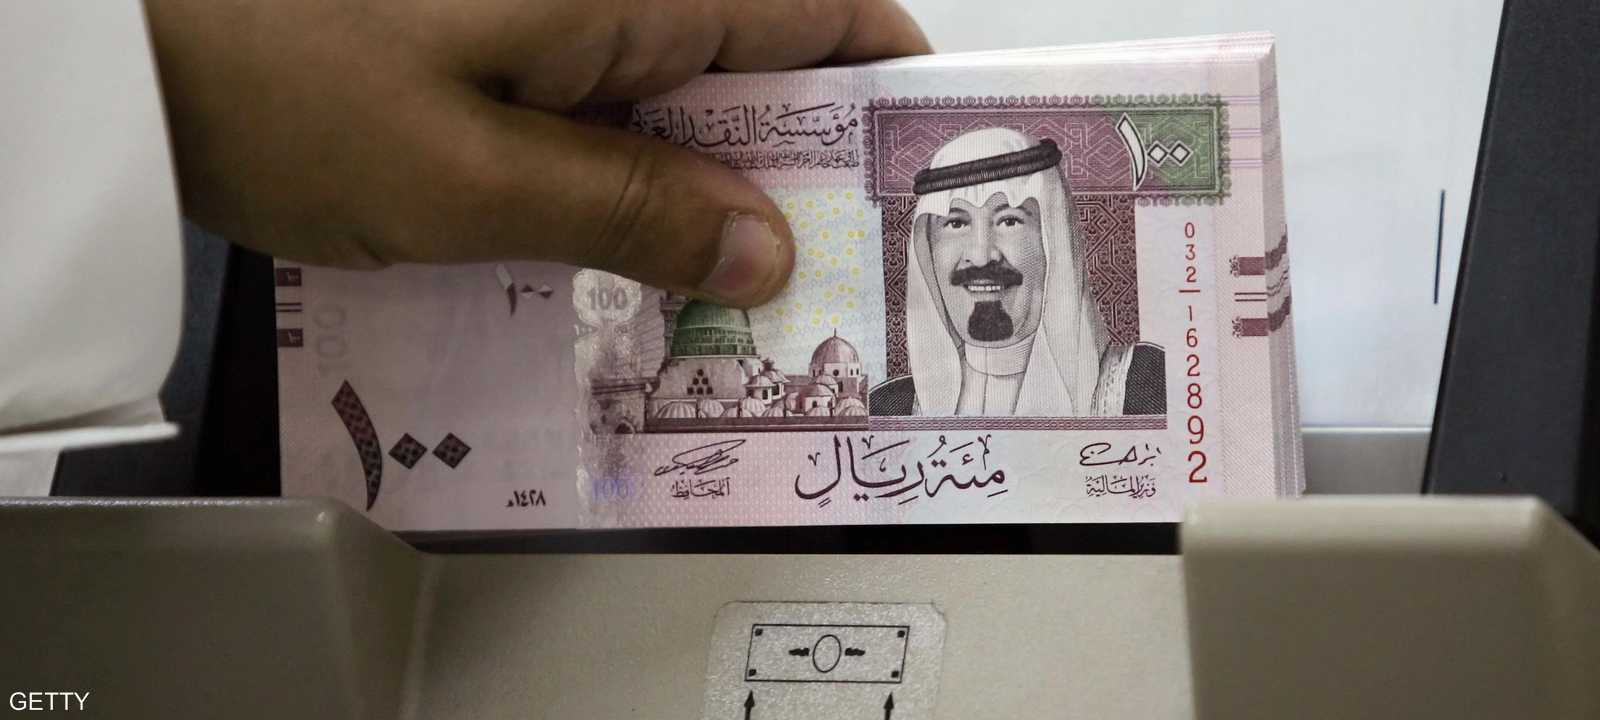 ستسمح هيئة السوق المالية السعودية للمؤسسات الأجنبية المؤهلة الاستثمار بالأسهم المدرجة بأكبر بورصة في العالم العربي اعتبارا من 15 يونيو